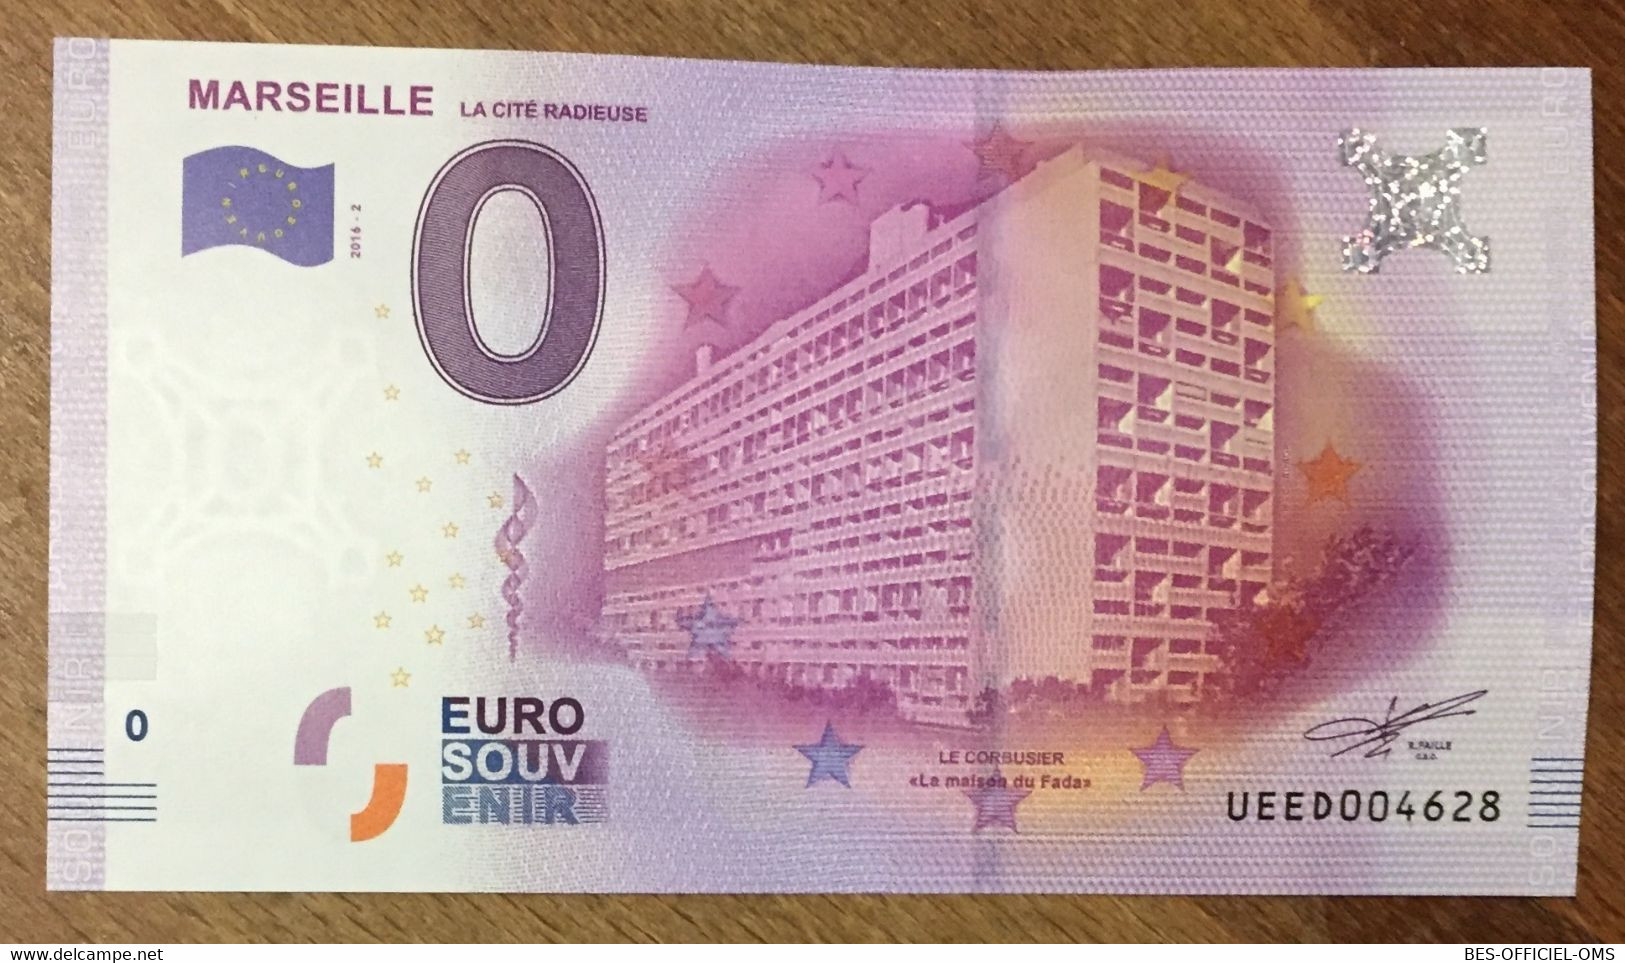 2016 BILLET 0 EURO SOUVENIR DPT 13 MARSEILLE LE CITÉ RADIEUSE ZERO 0 EURO SCHEIN BANKNOTE PAPER MONEY BANK - Private Proofs / Unofficial